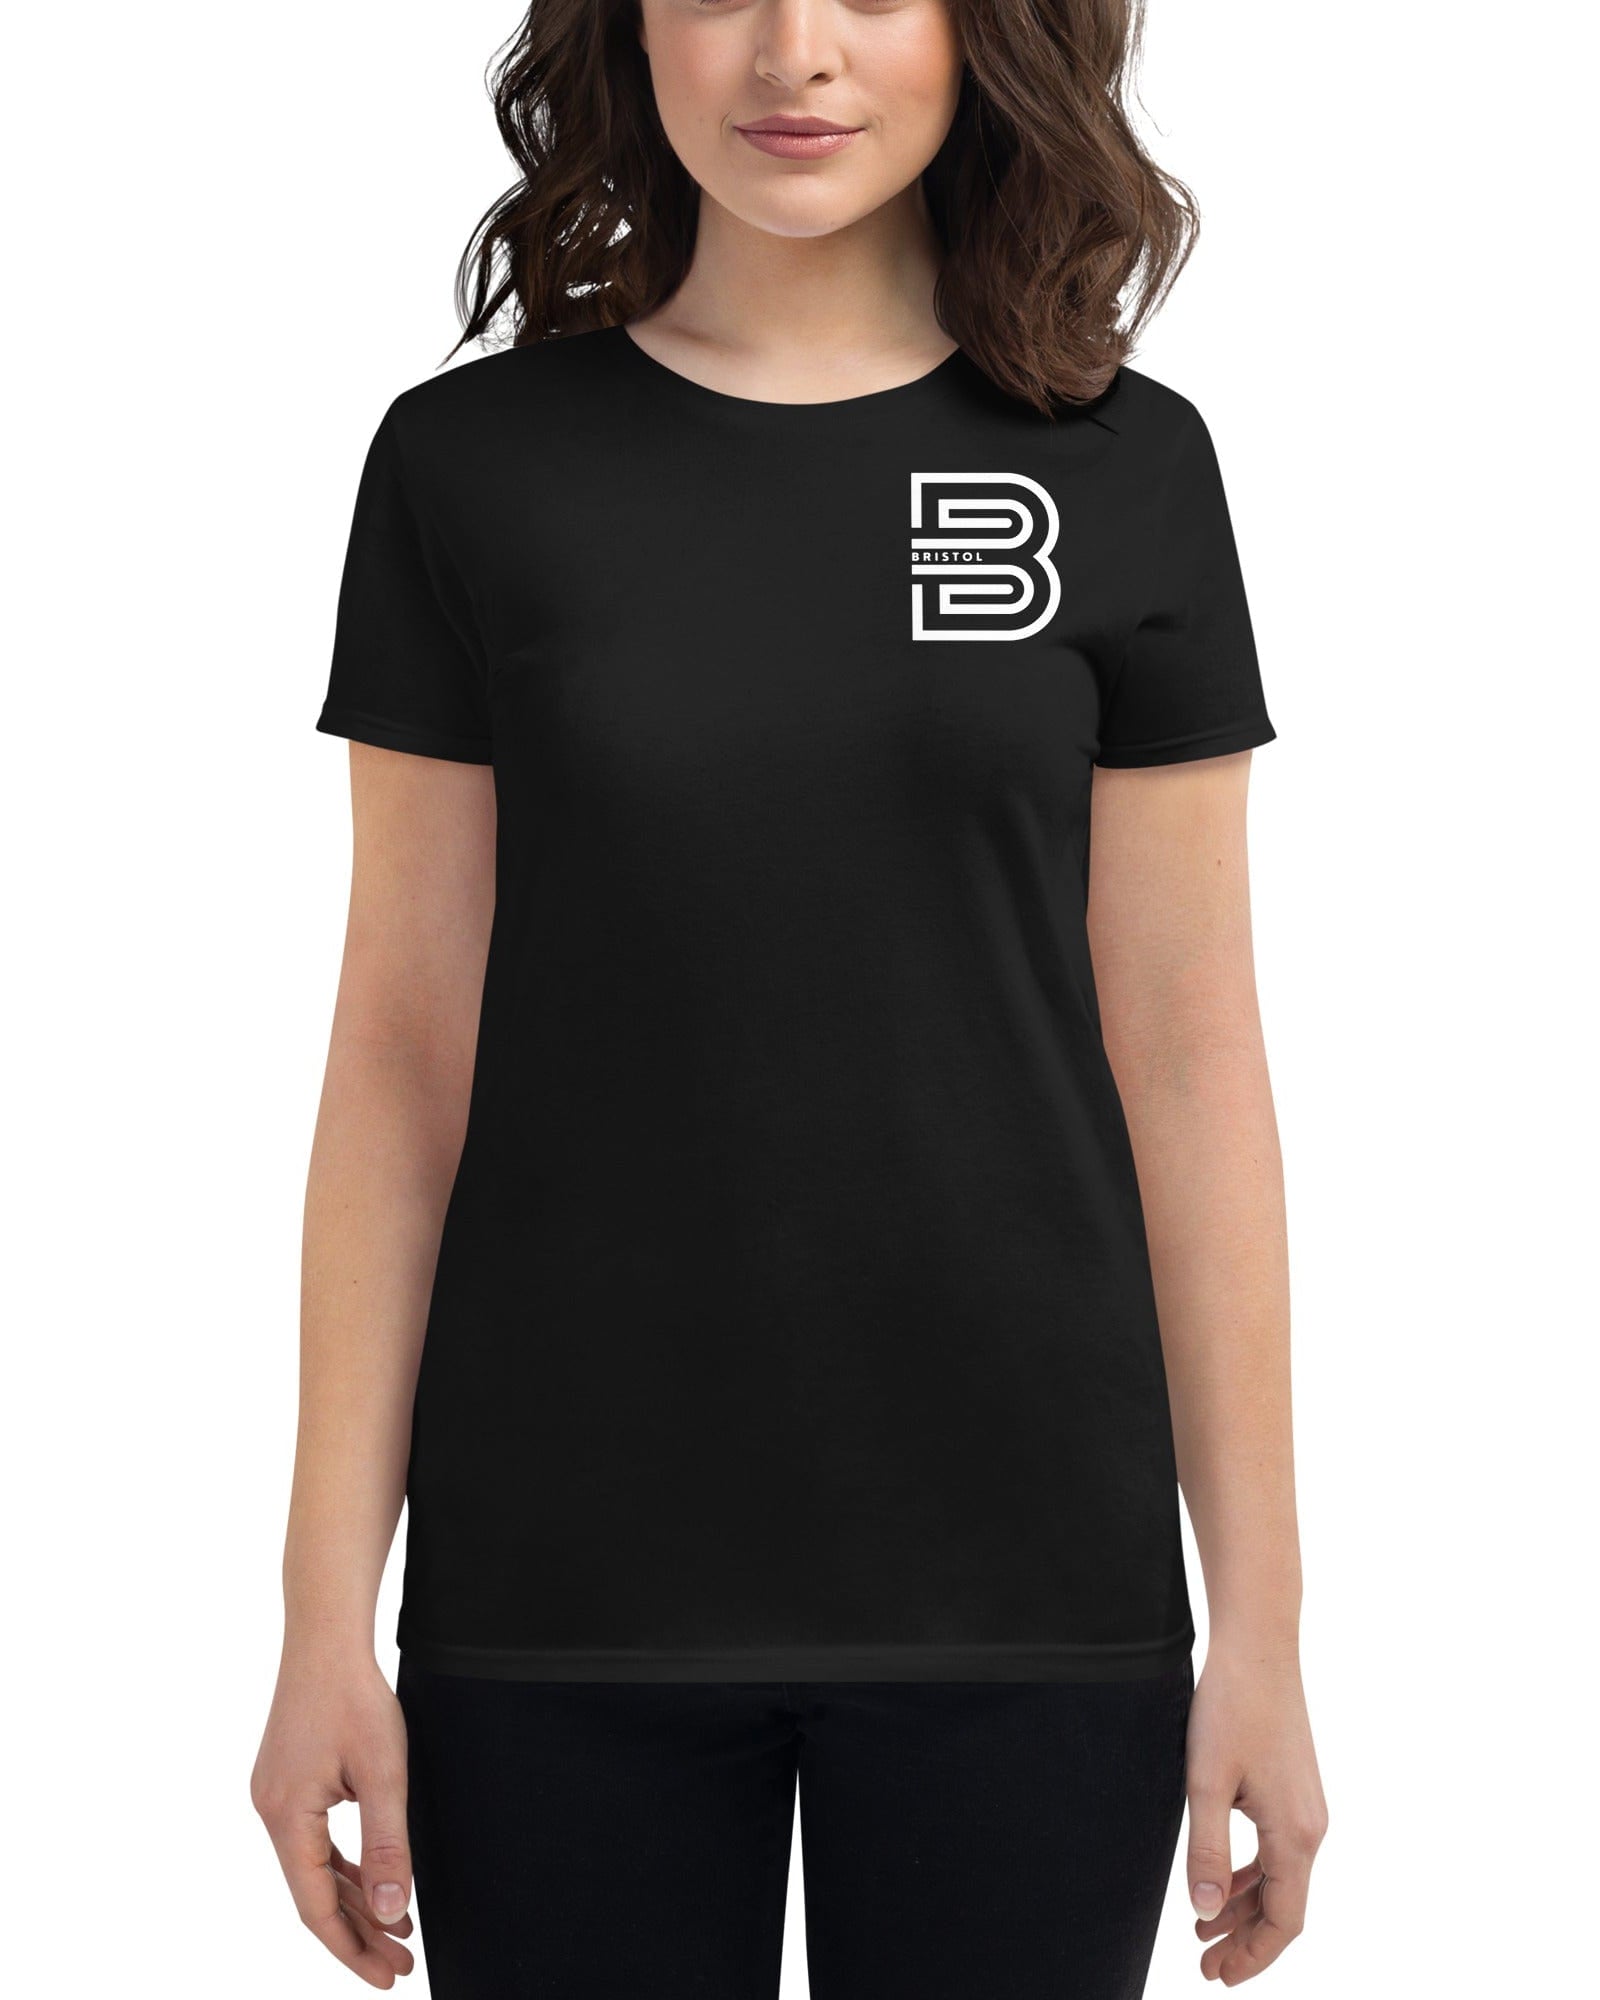 Bristol B Women's T-shirt Shirts & Tops Jolly & Goode